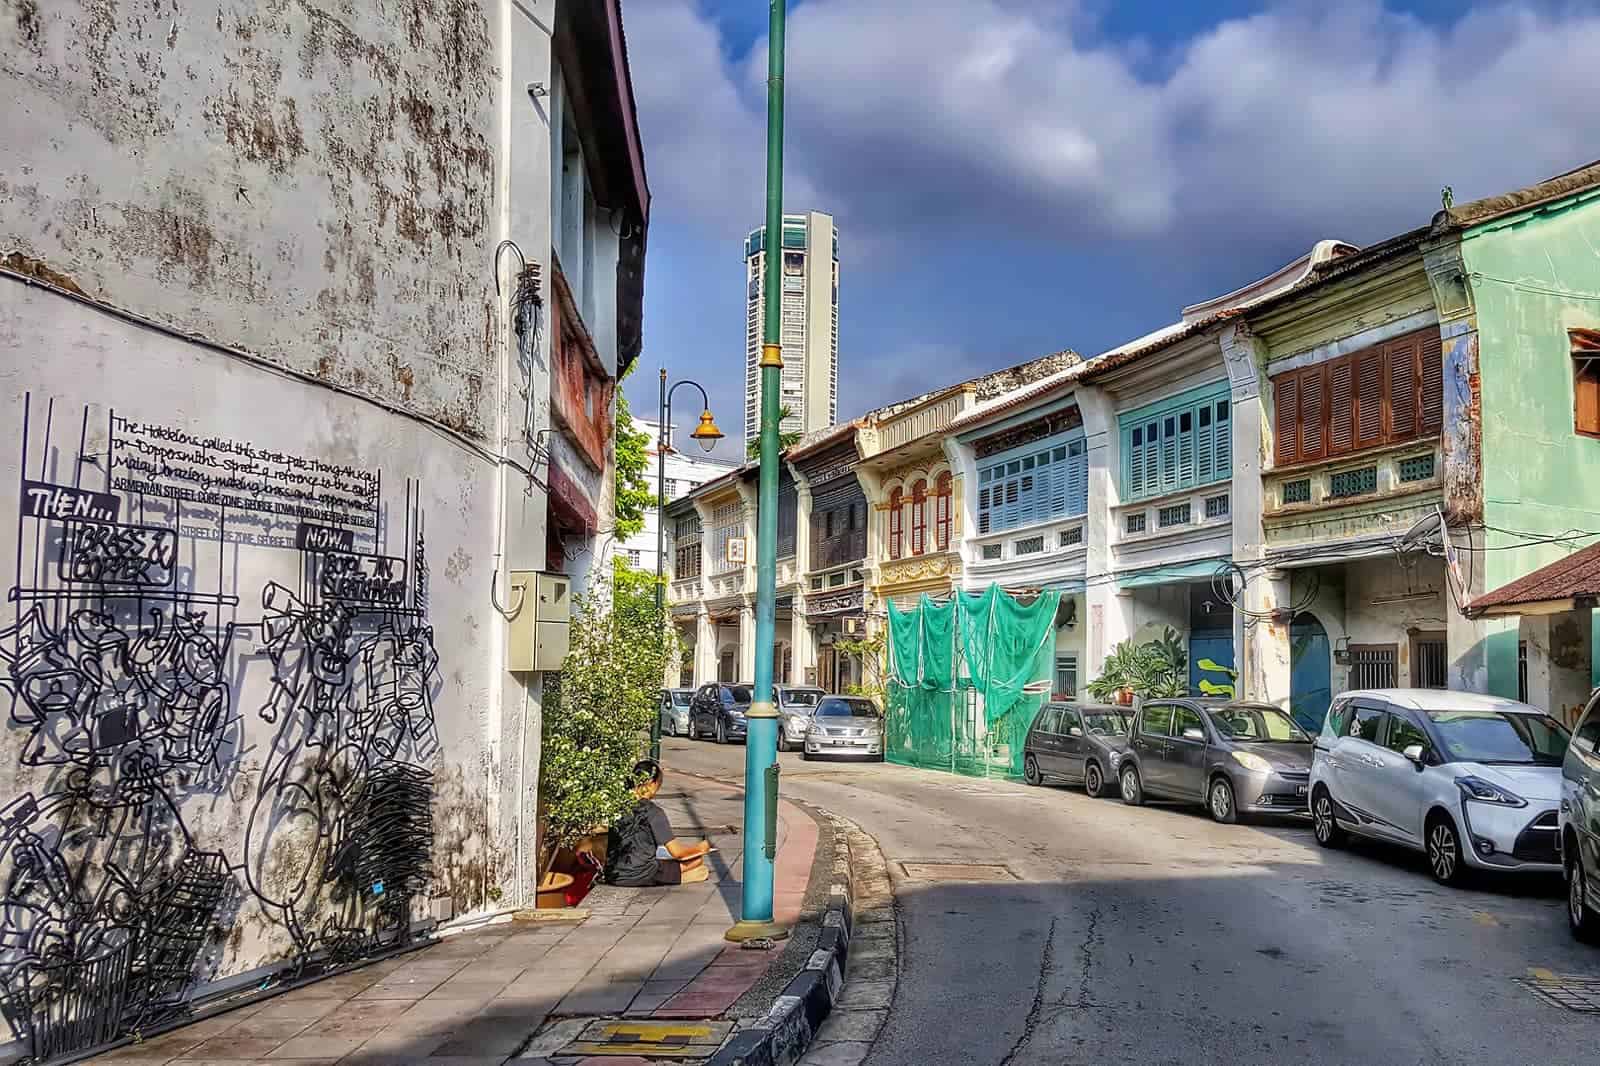 Penang street view.